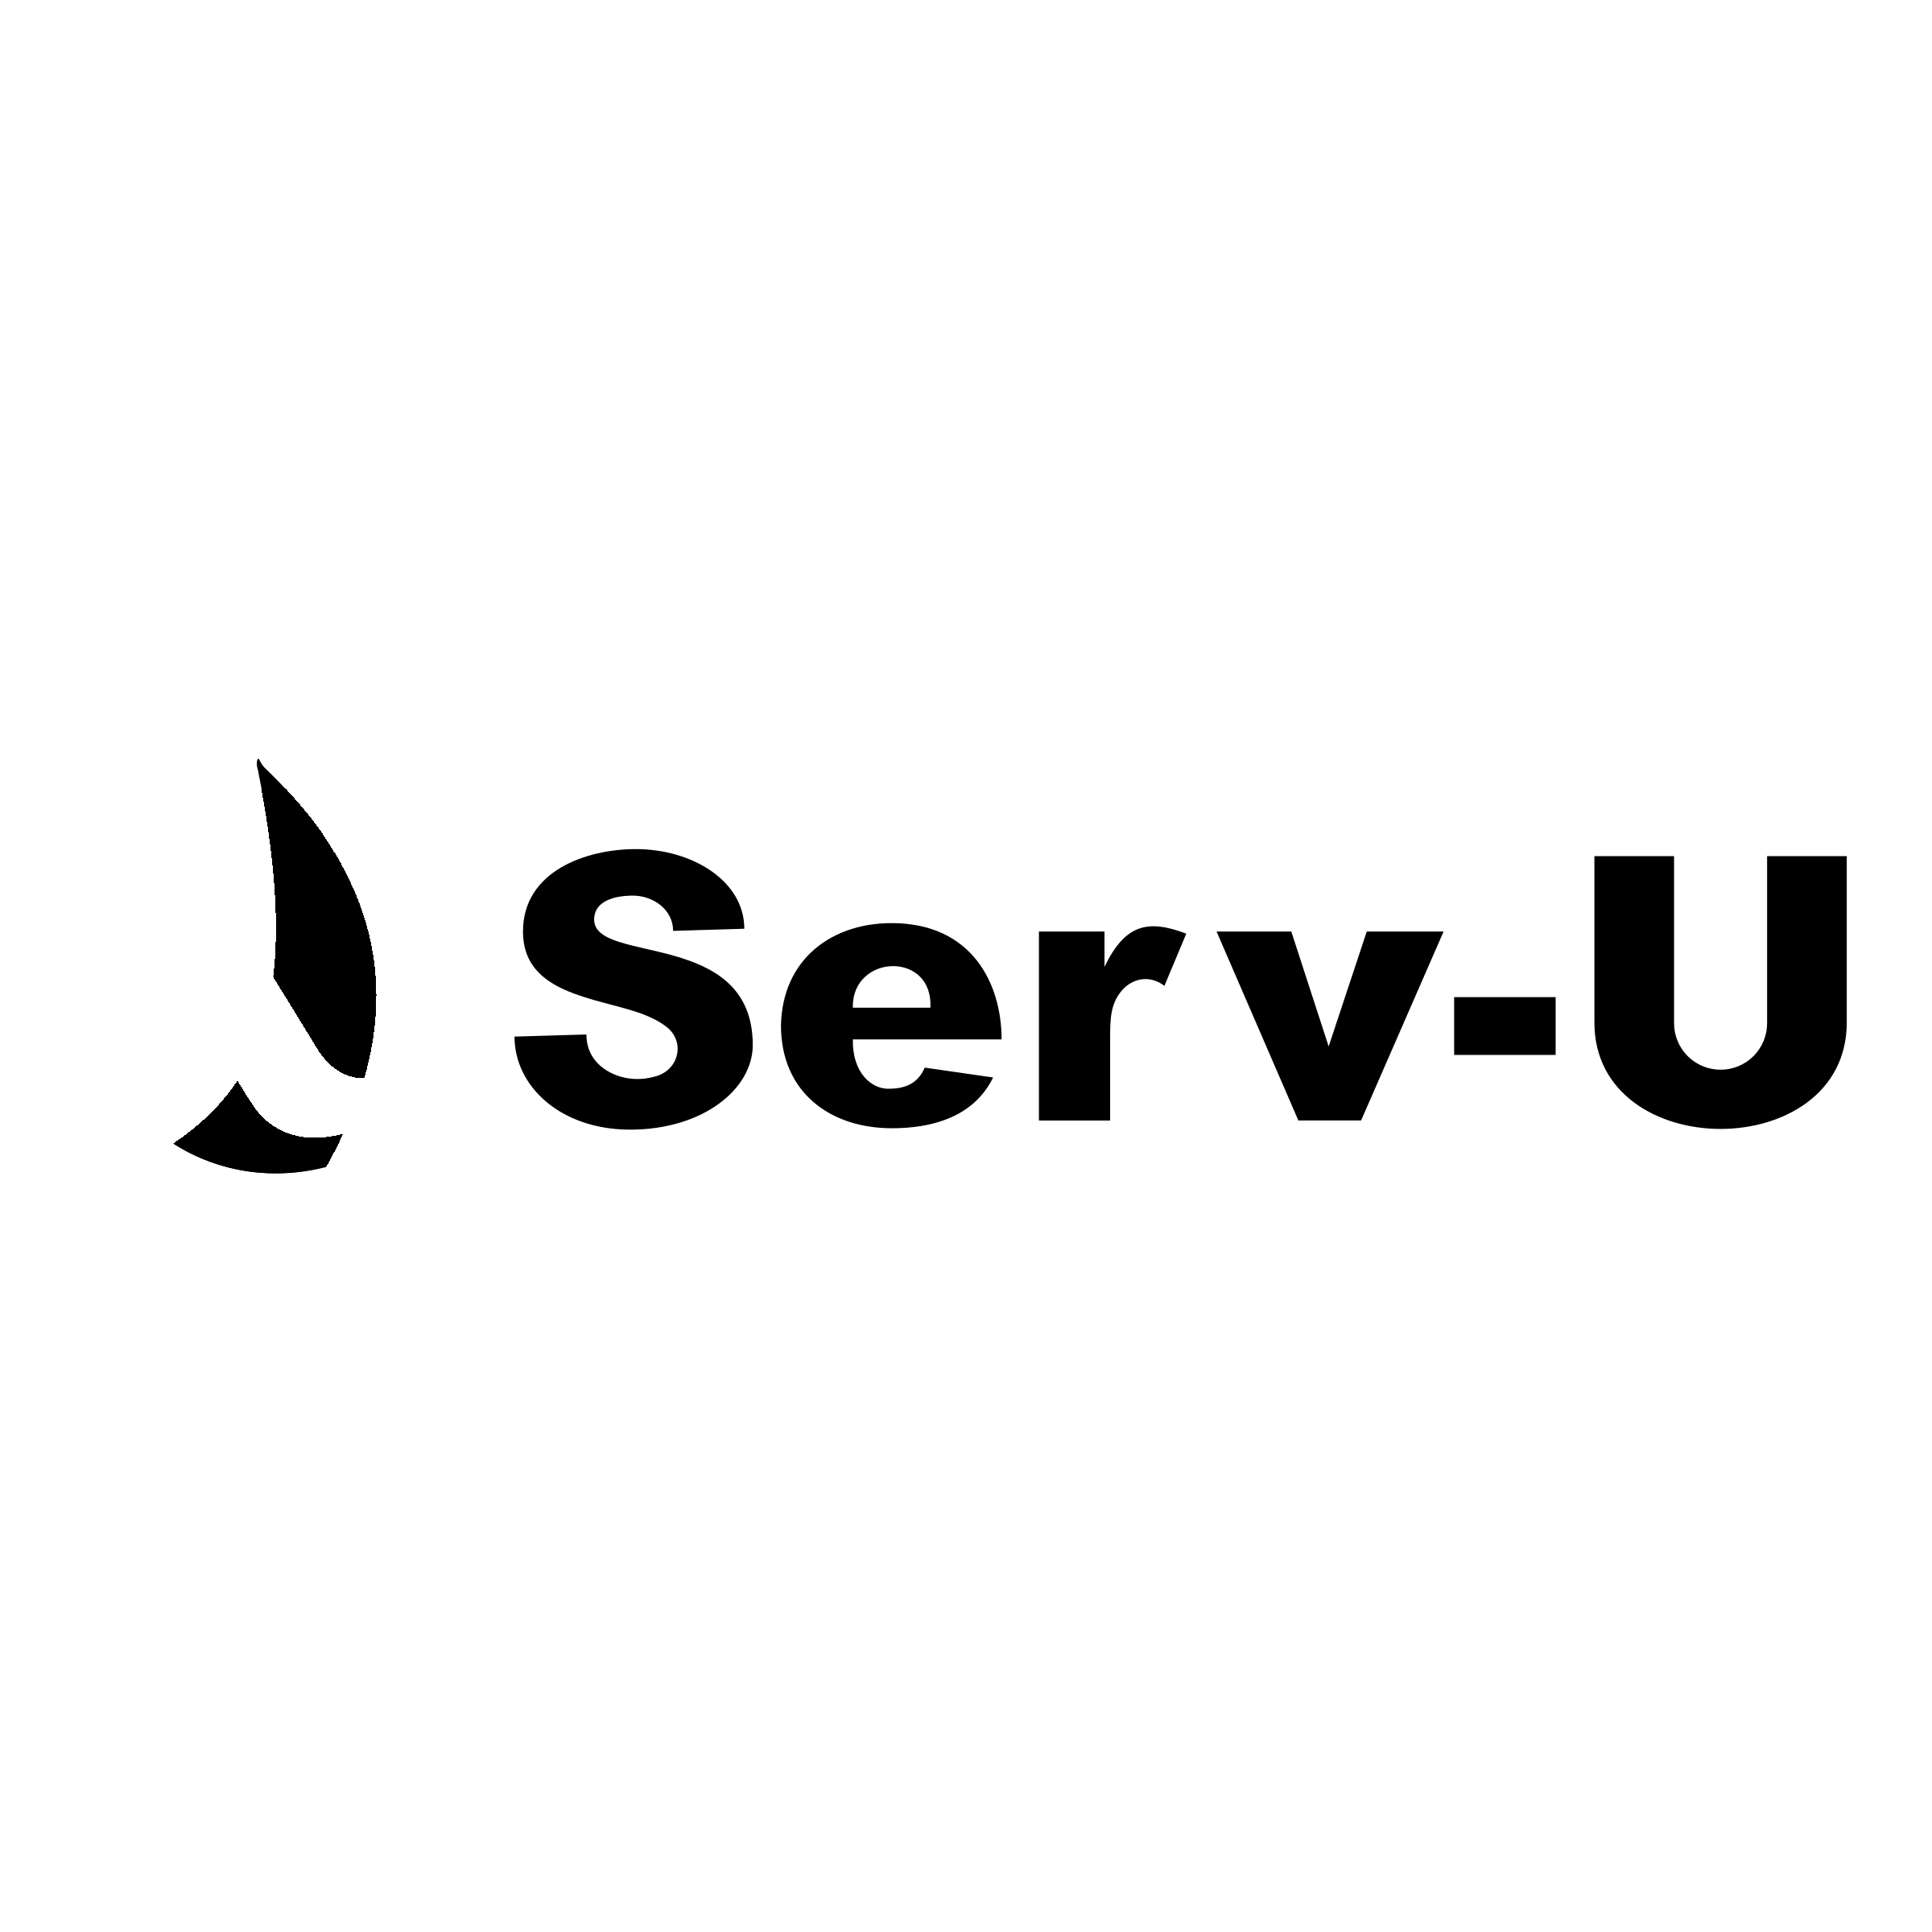 Black Server Logo - Serv U FTP Server Logo PNG Transparent & SVG Vector